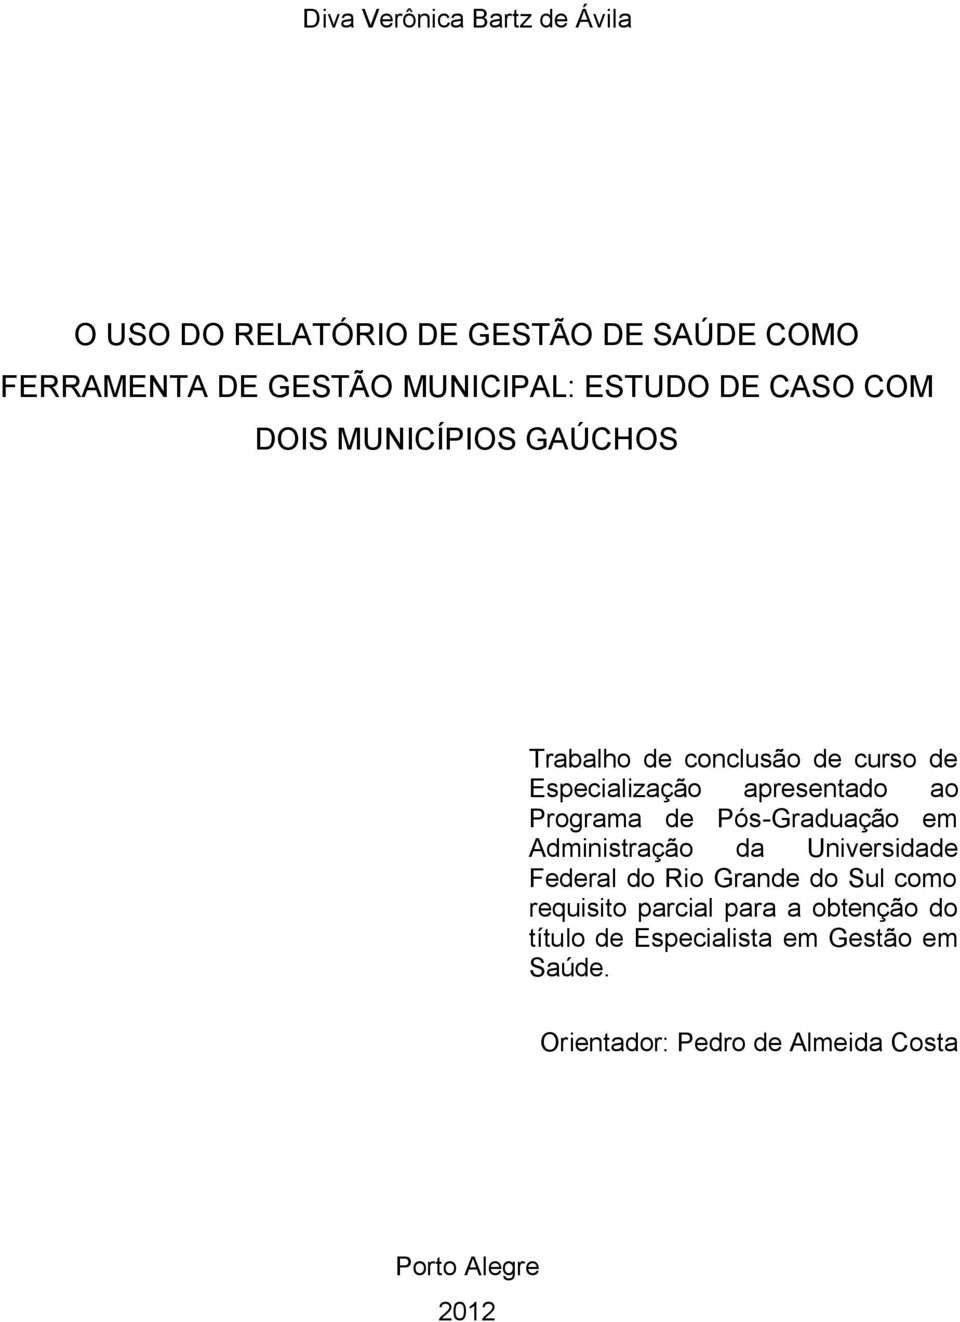 Programa de Pós-Graduação em Administração da Universidade Federal do Rio Grande do Sul como requisito